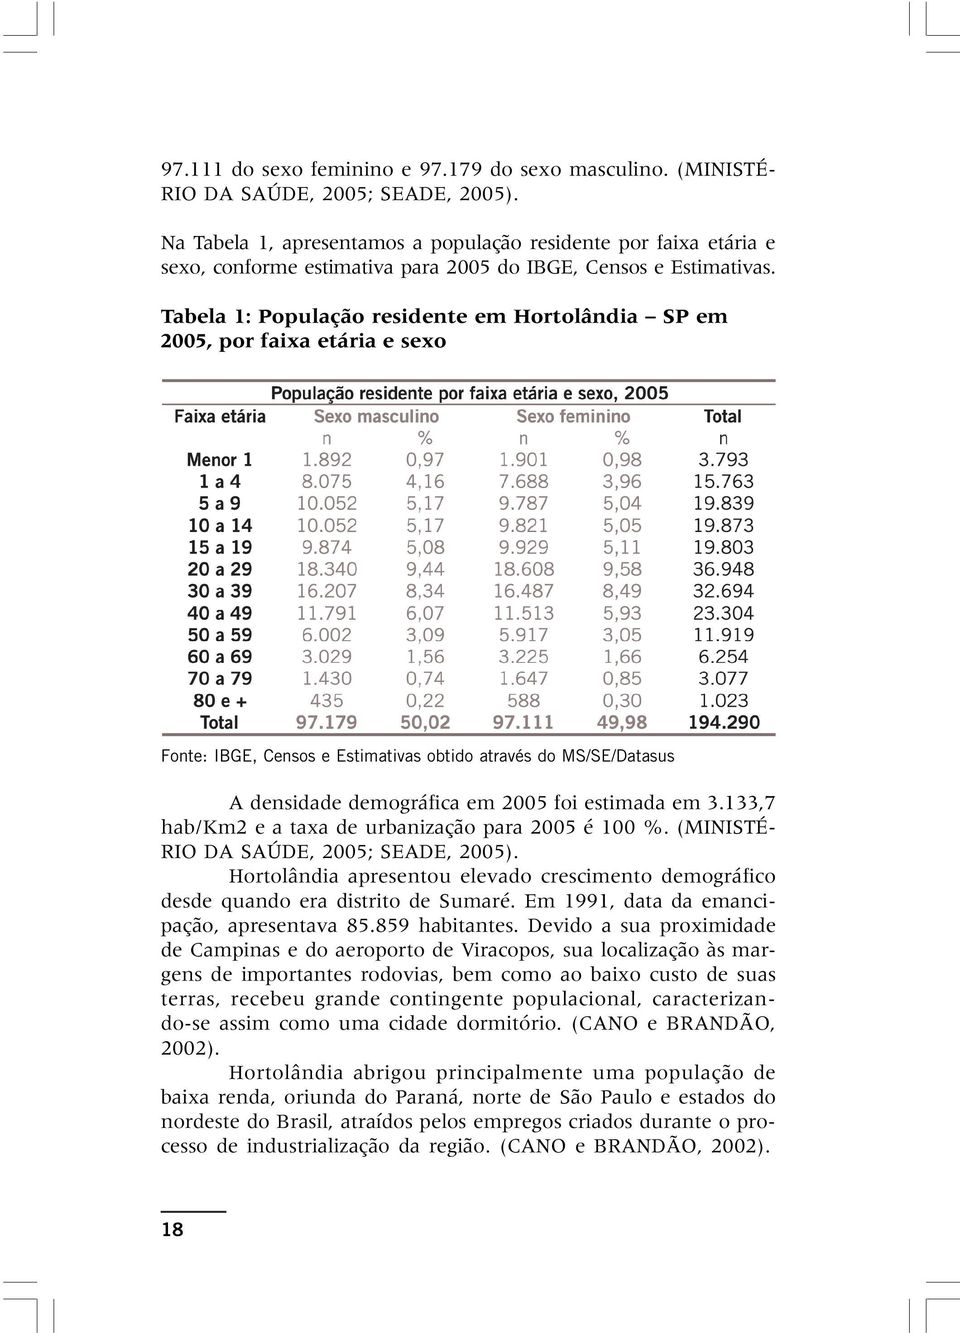 Tabela 1: População residente em Hortolândia SP em 2005, por faixa etária e sexo Fonte: IBGE, Censos e Estimativas obtido através do MS/SE/Datasus A densidade demográfica em 2005 foi estimada em 3.